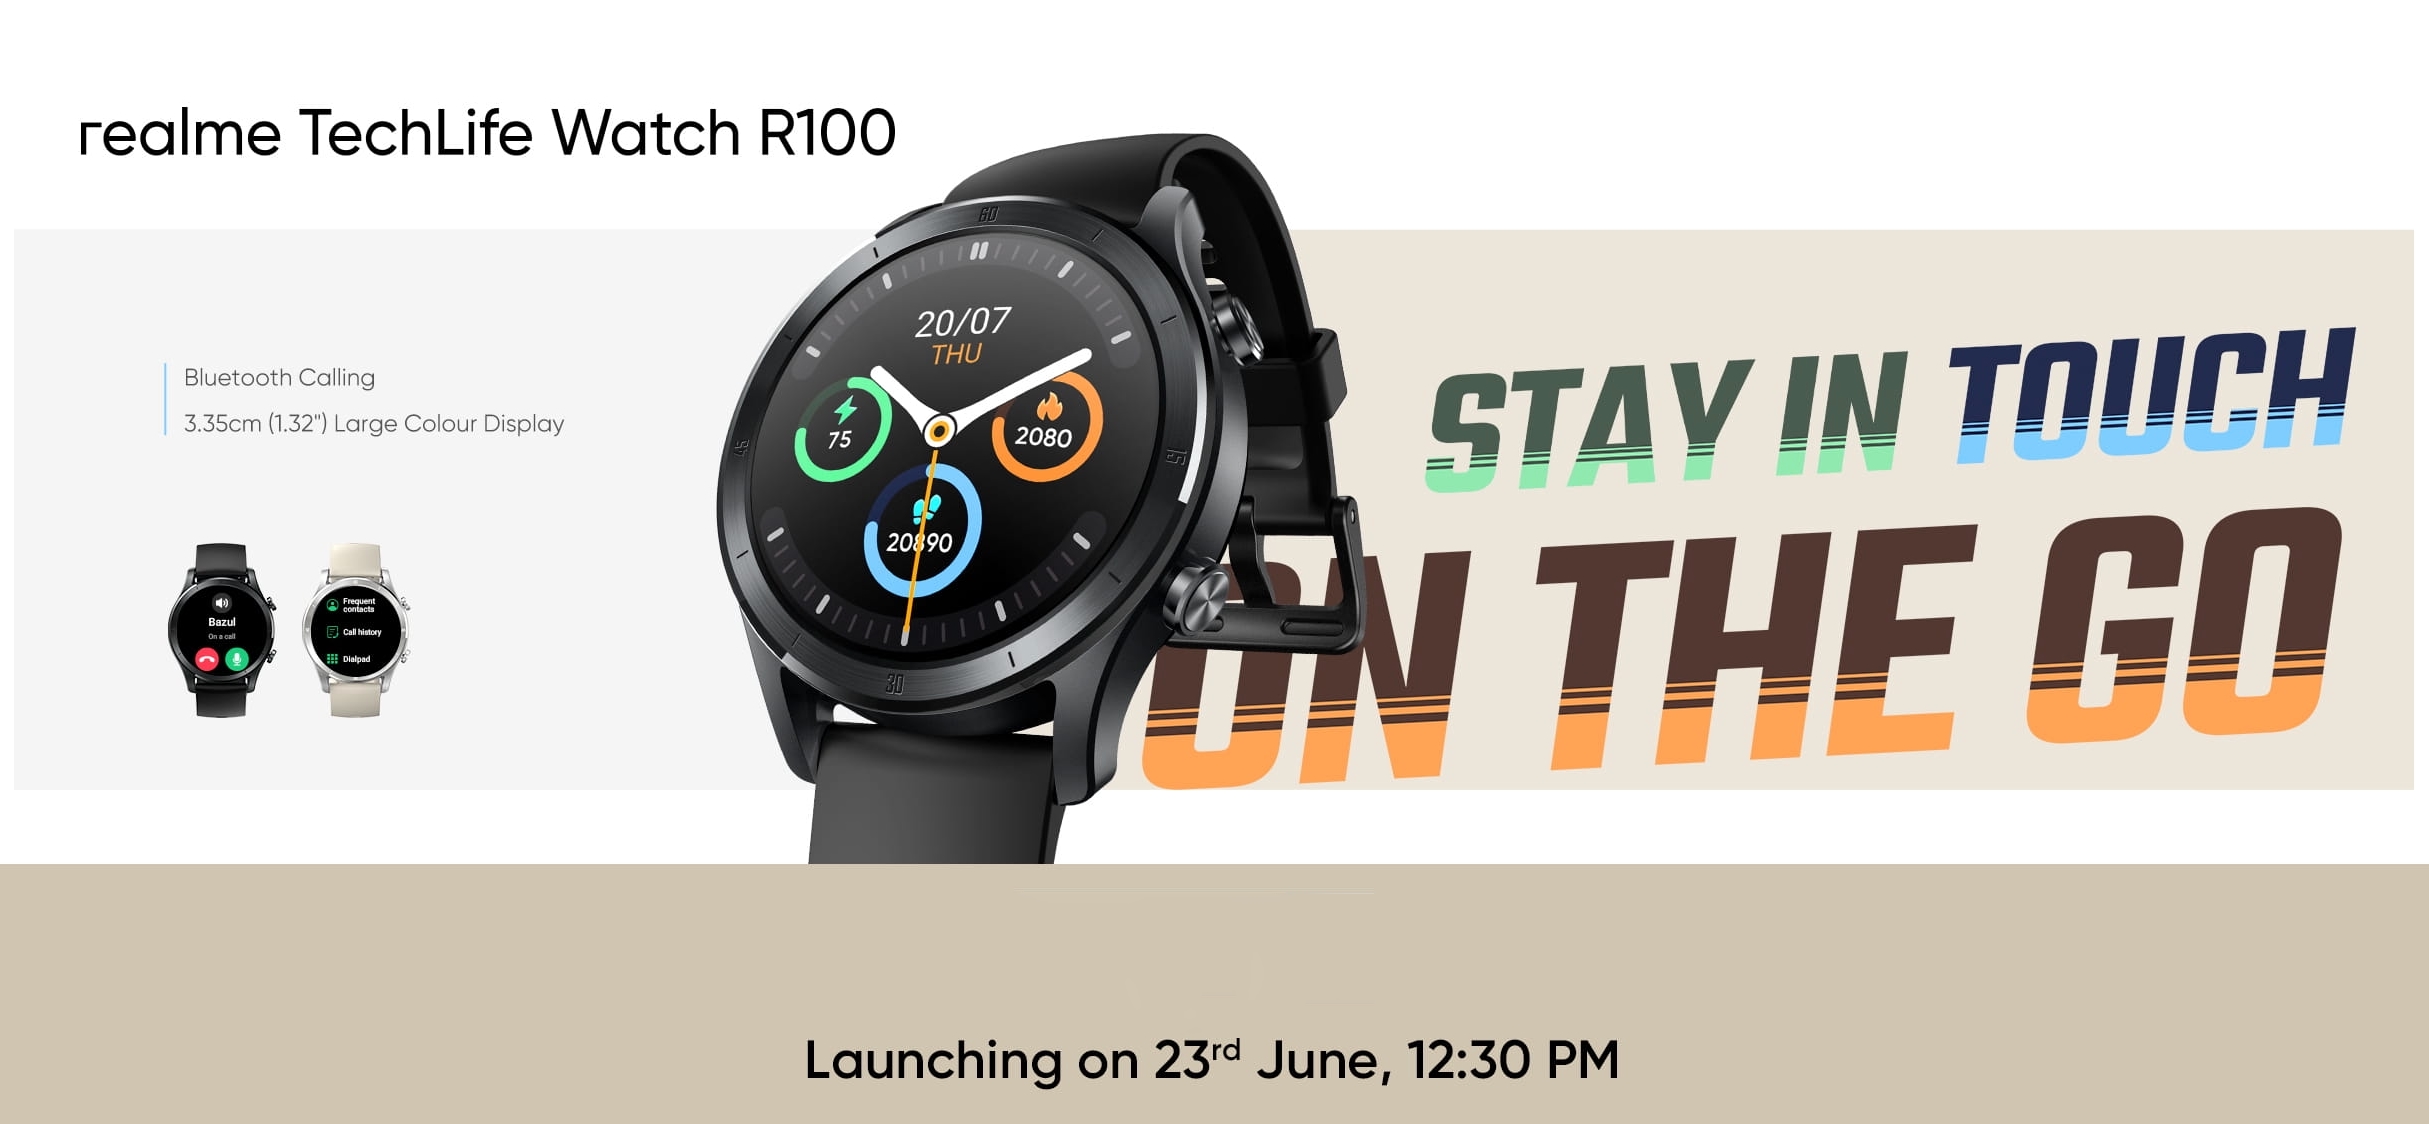 realme techlife watch r100 montre intelligente avec fonction d'appel et autonomie jusqu'à 7 jours le 23 juin